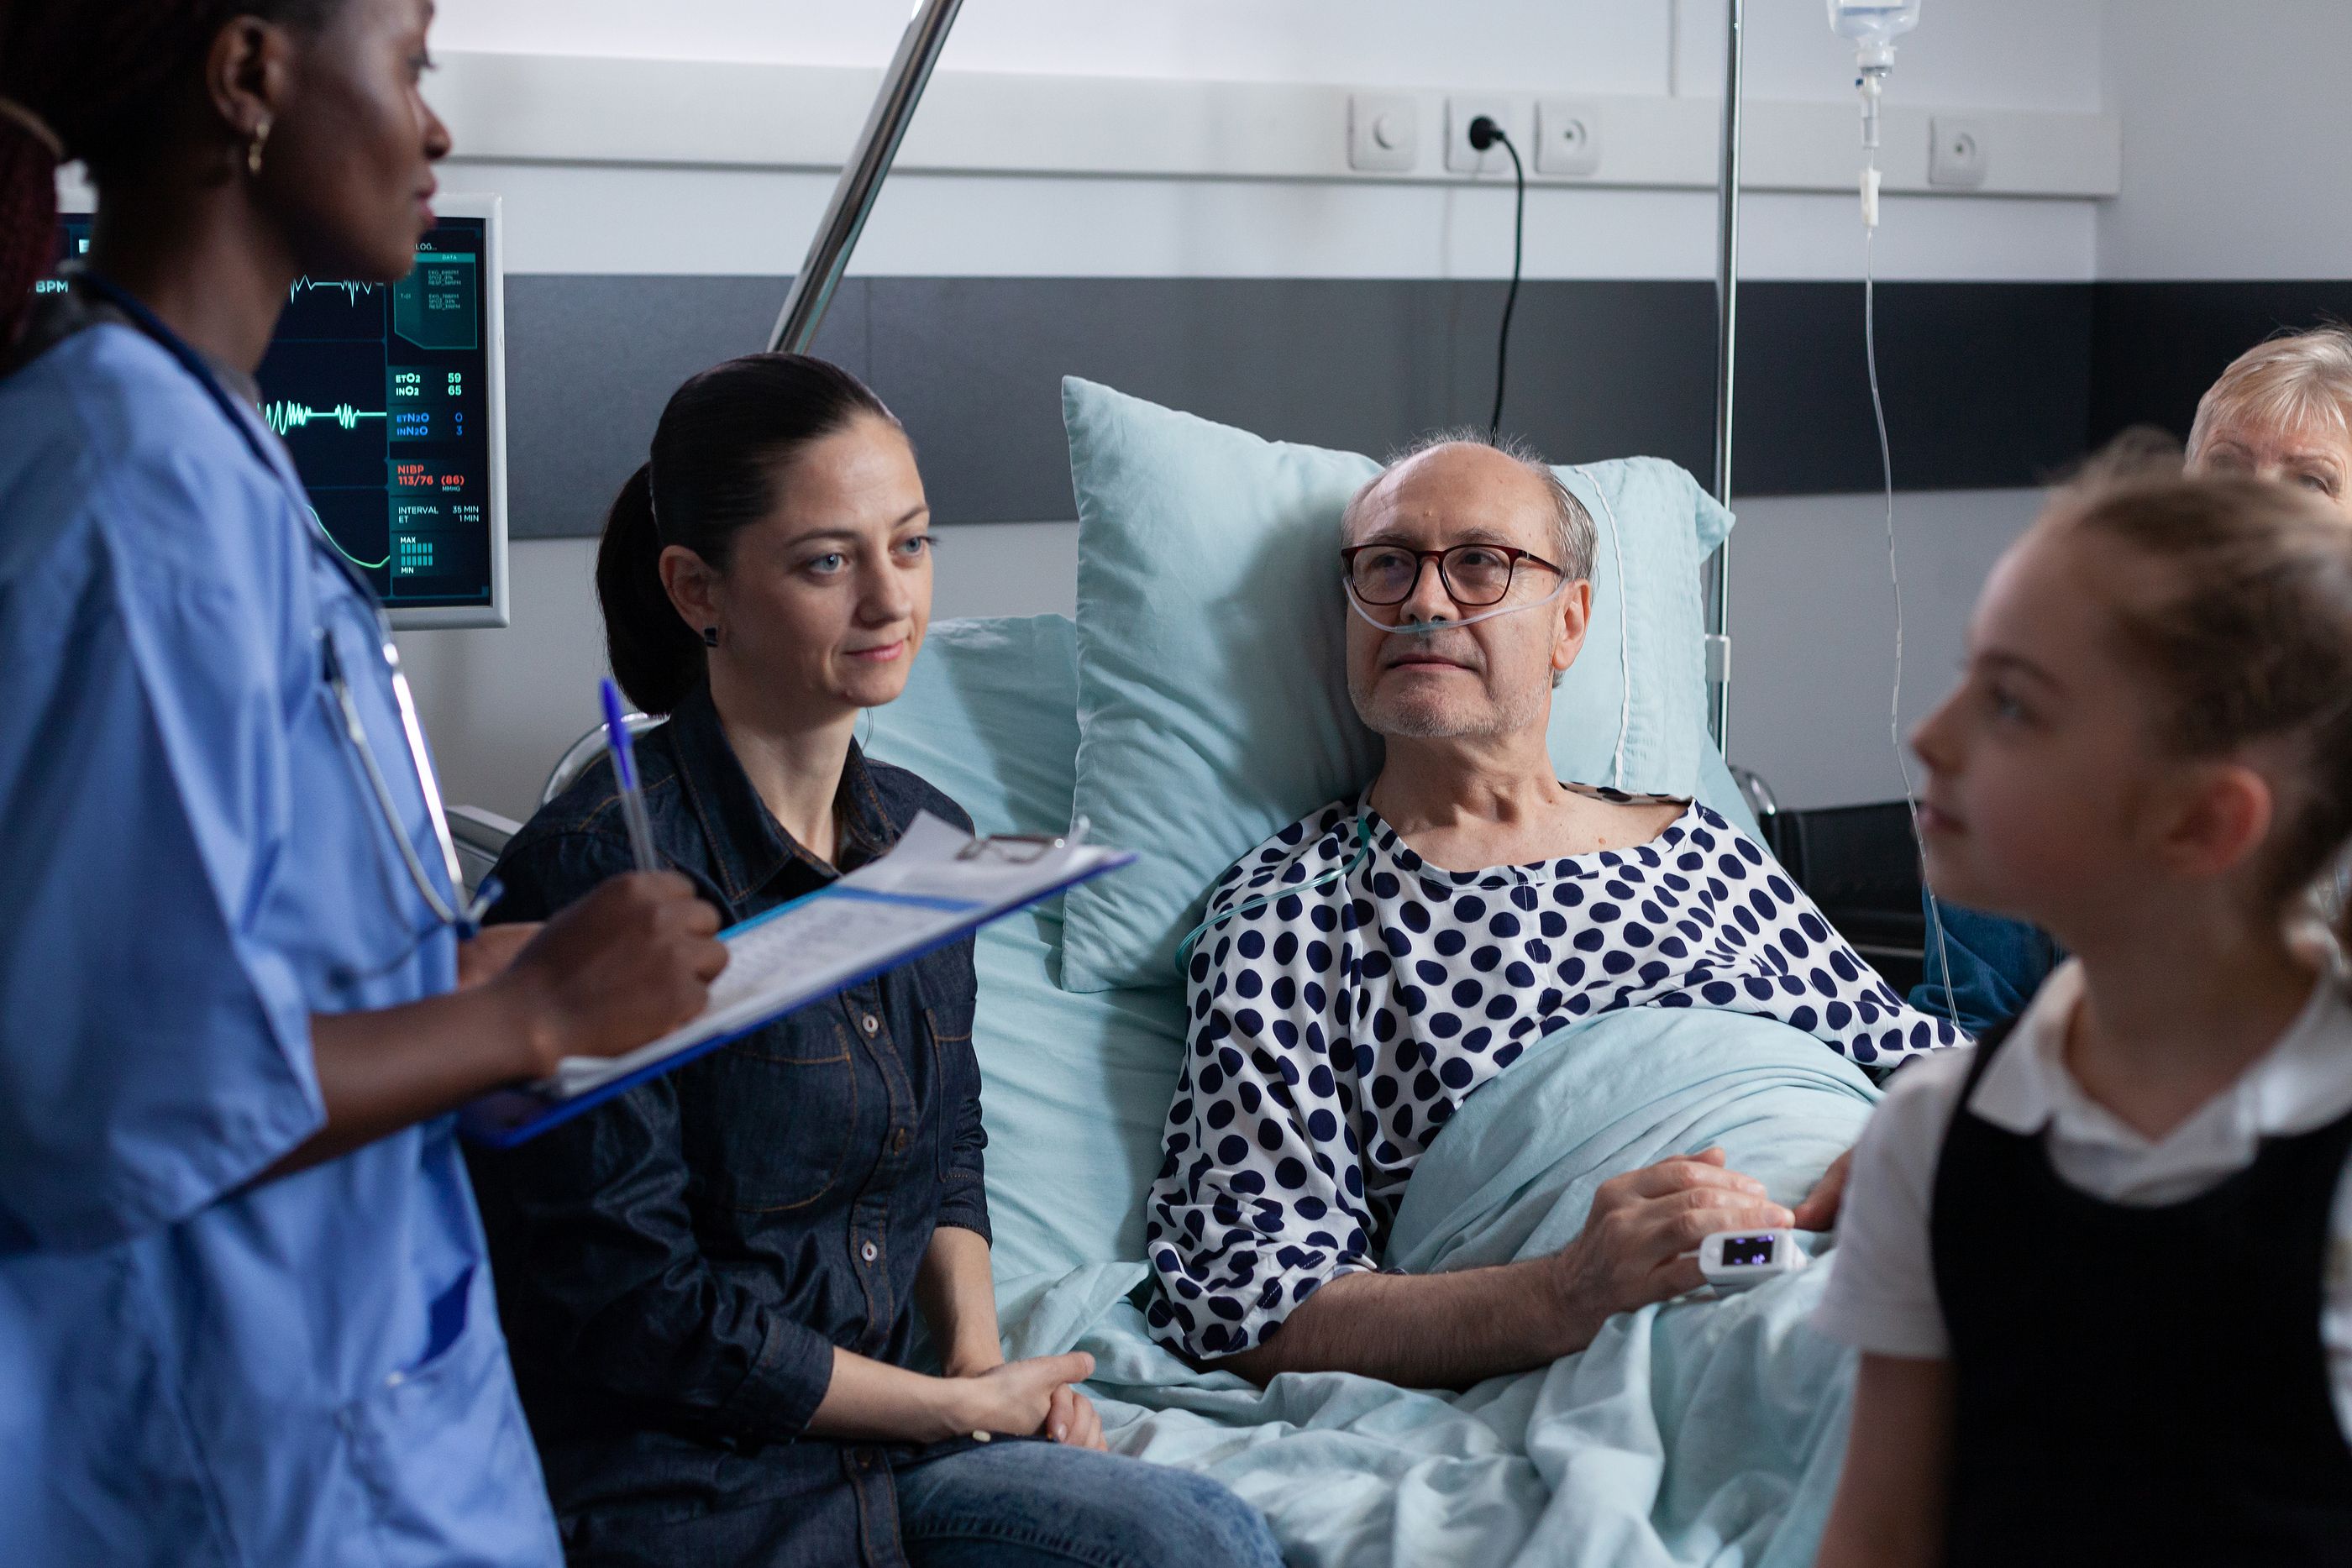 Al 70% de los pacientes de cuidados paliativos les gustaría hablar más abiertamente de la muerte